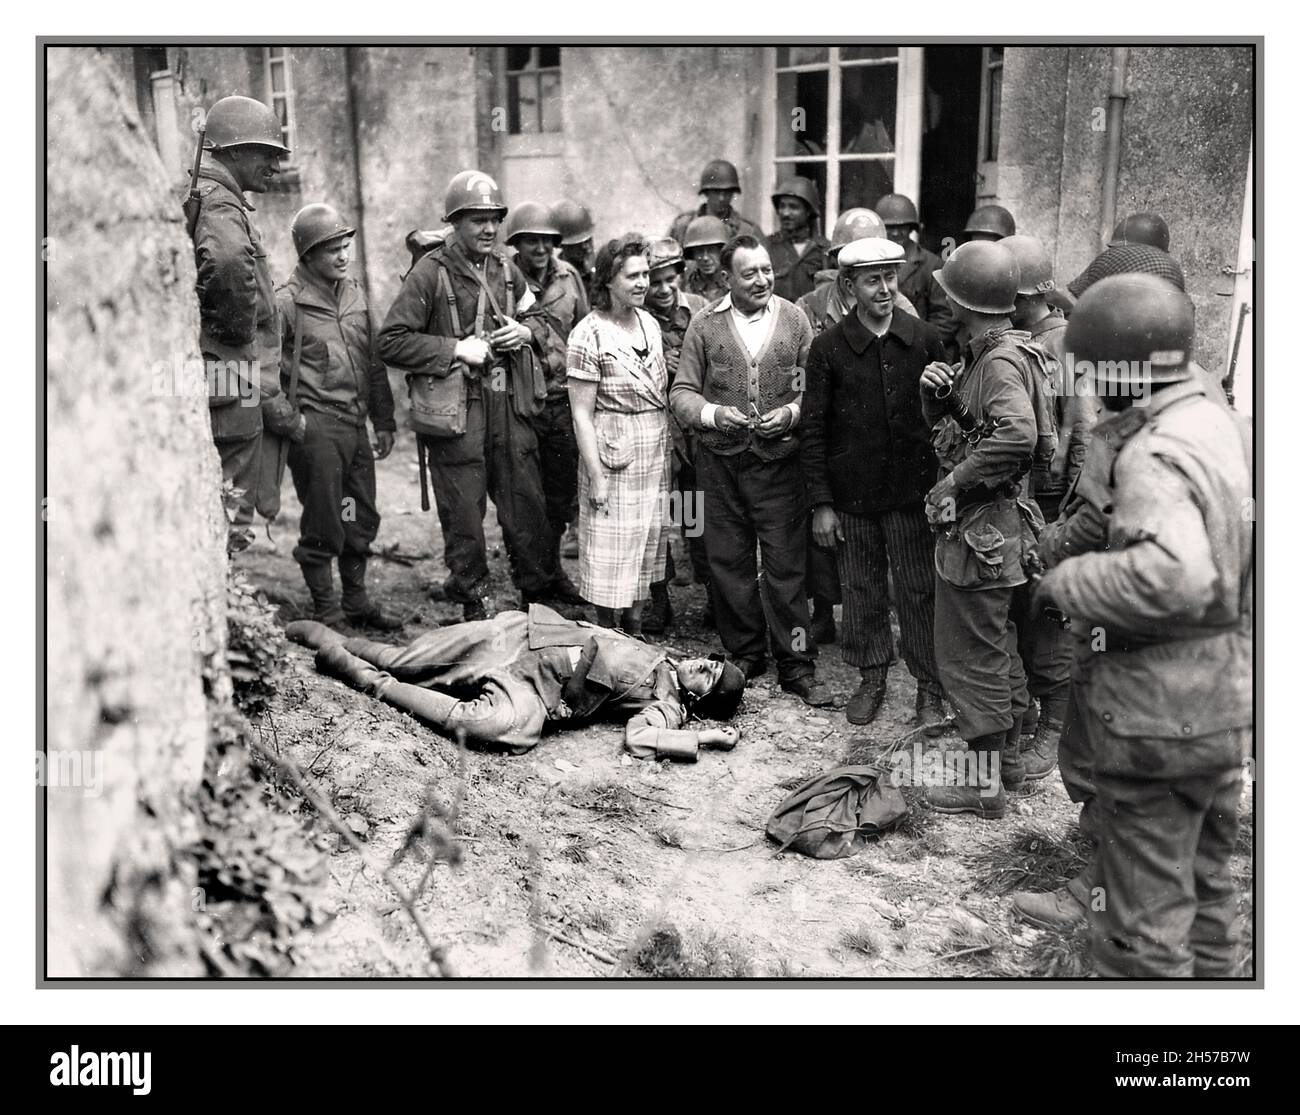 Avance du jour J et libération française en Normandie soldats américains avec groupe libéré de résidents français normands locaux avec un terrible cadavre d'un soldat nazi de Wehrmacht 1944 Normandie France Banque D'Images